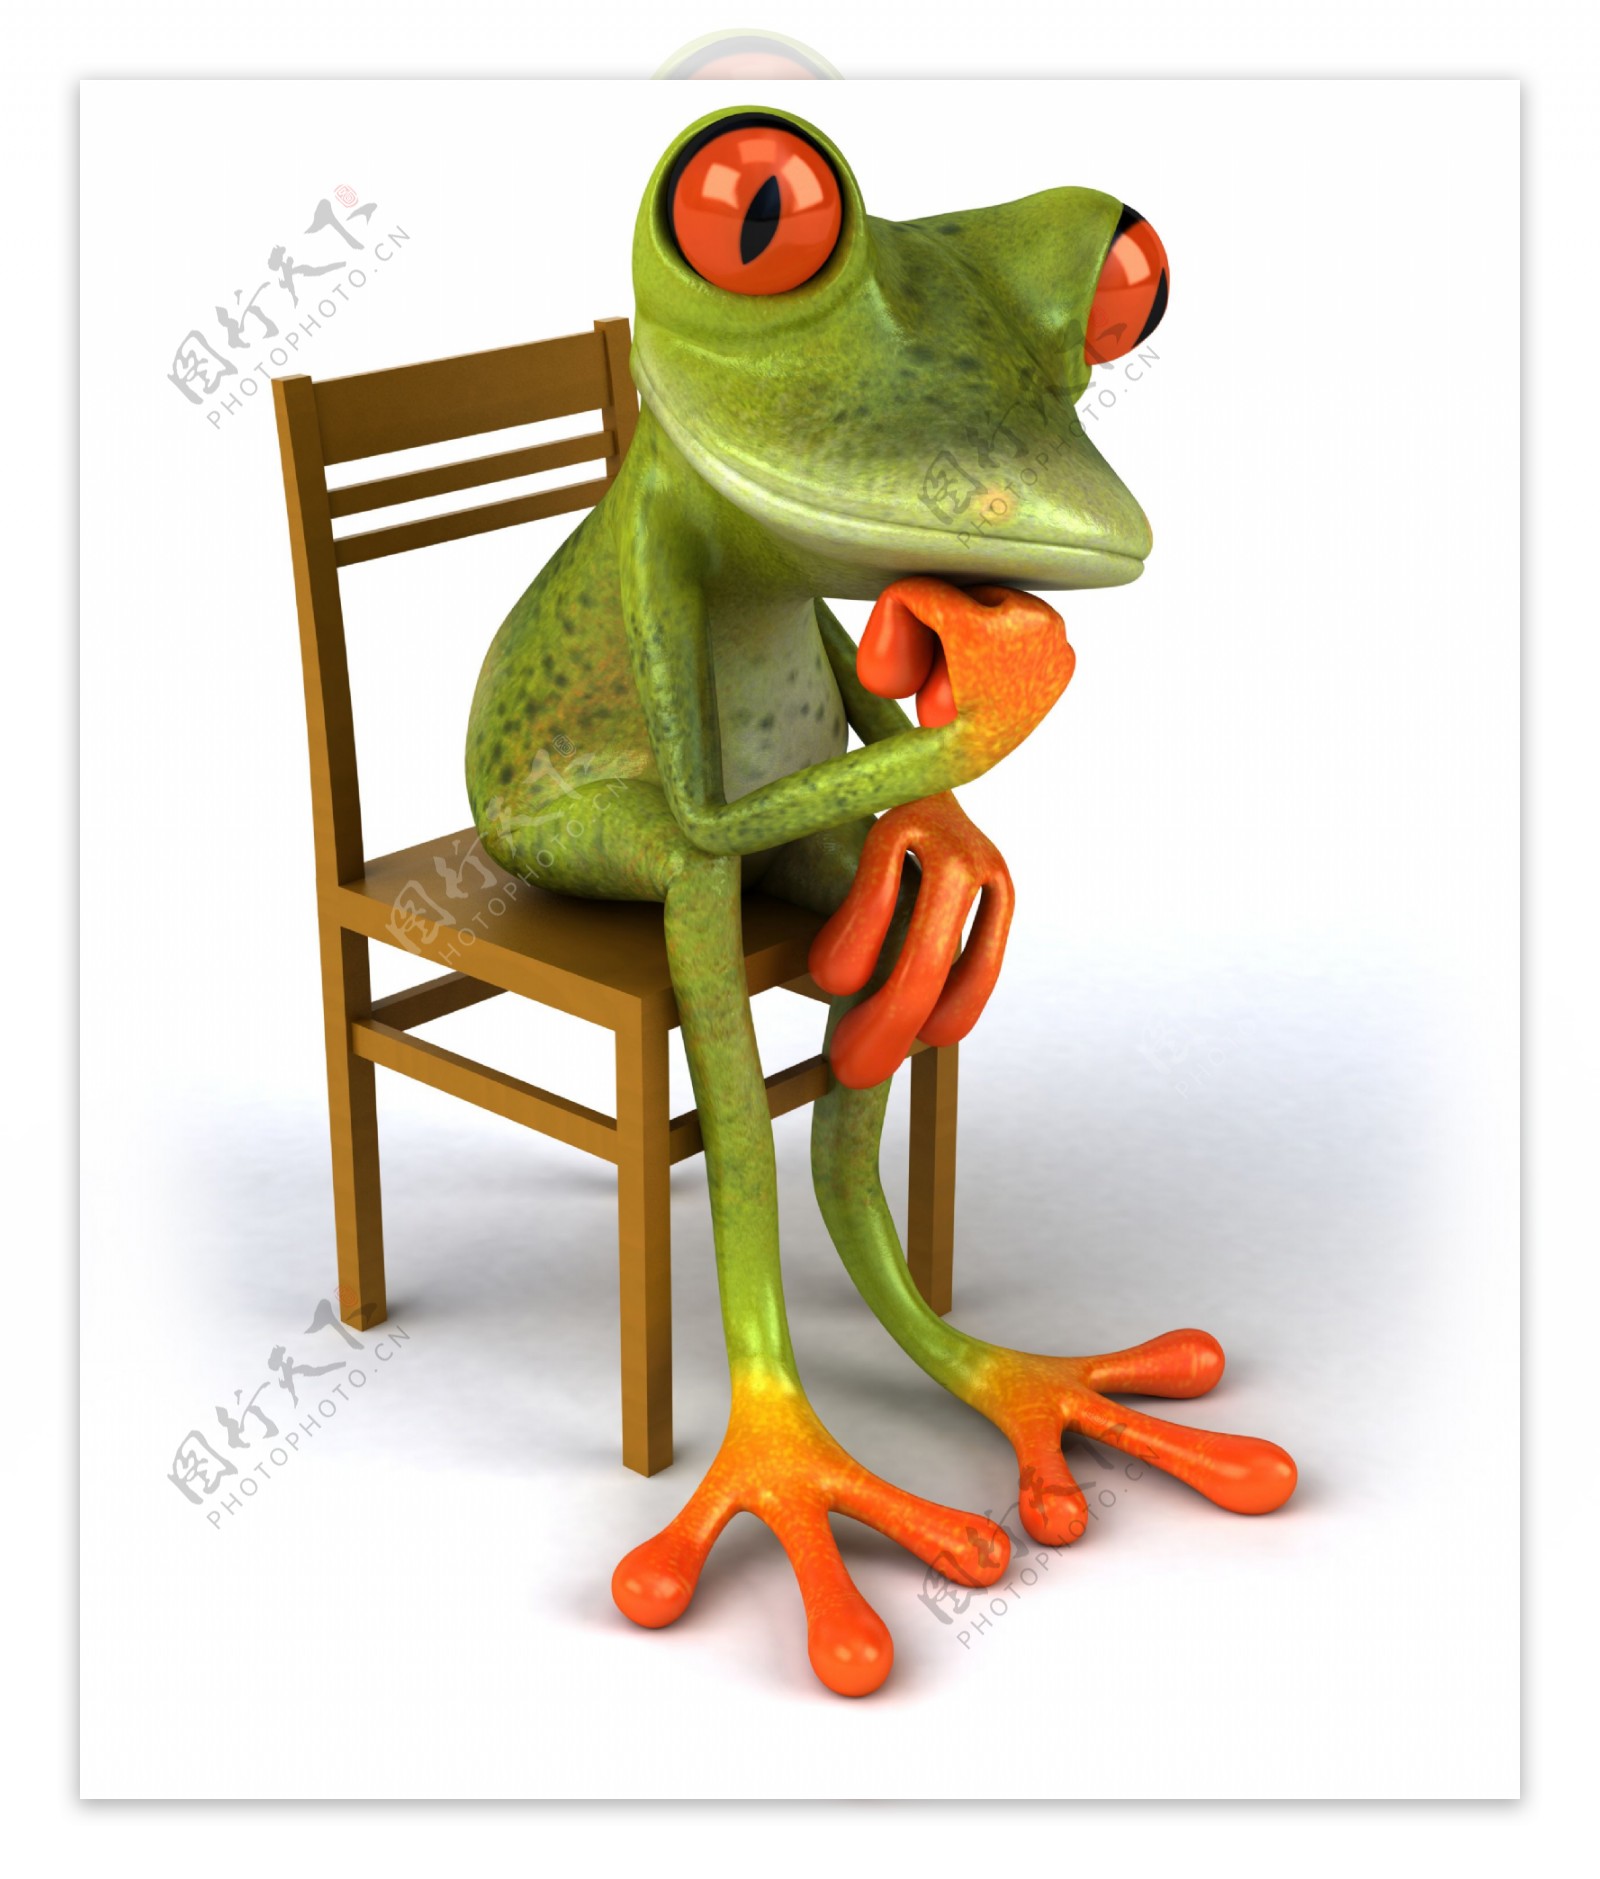 坐在椅子上沉思的青蛙图片